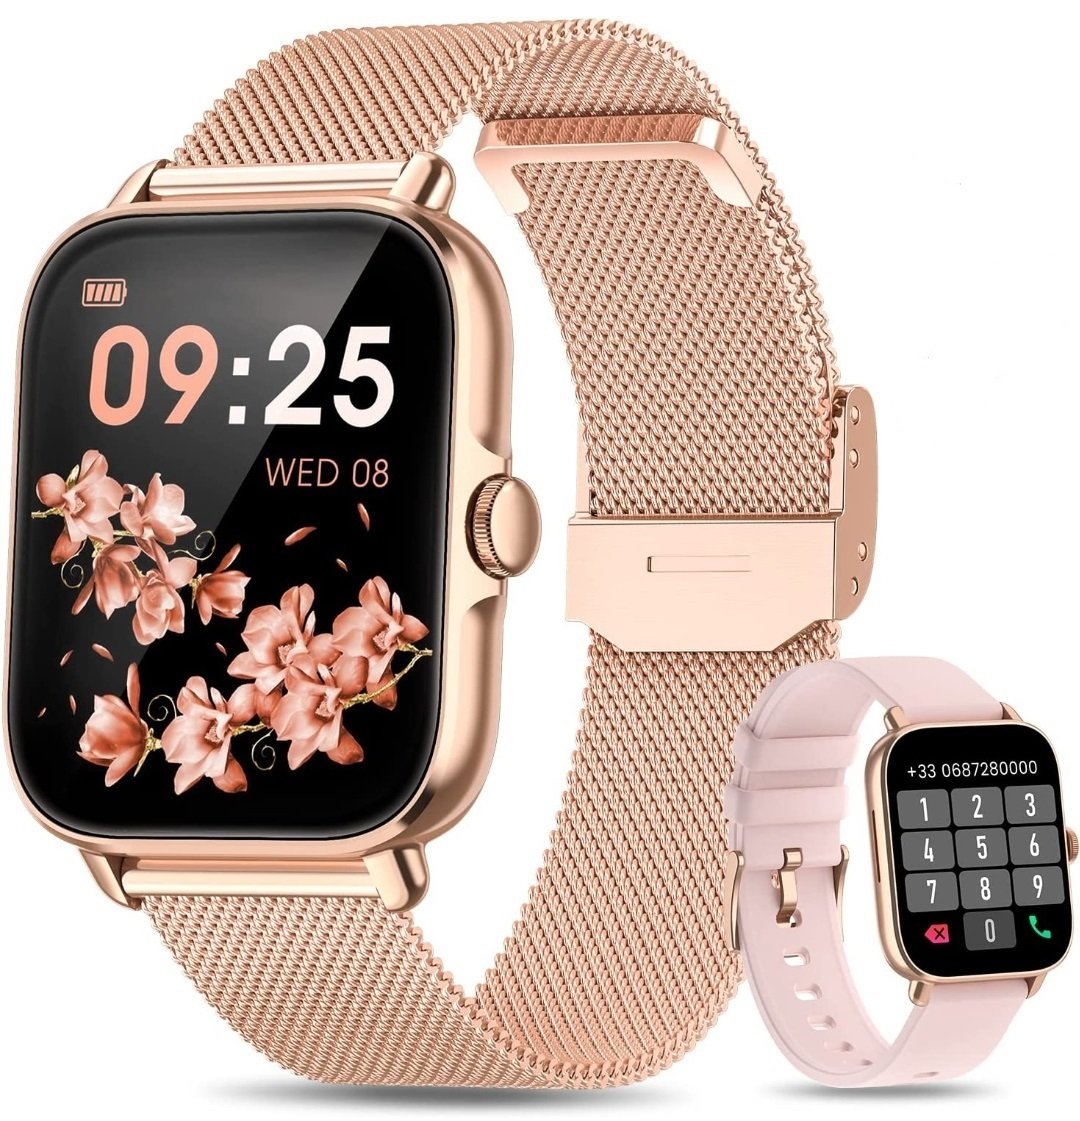 Smartwatch Damski Zegarek Menu Pl Rozmowy Polskie menu Pulsometr 2 Paski Najnowszy Model Wiele Funkcji Ios Android Smart Watch smartwatche